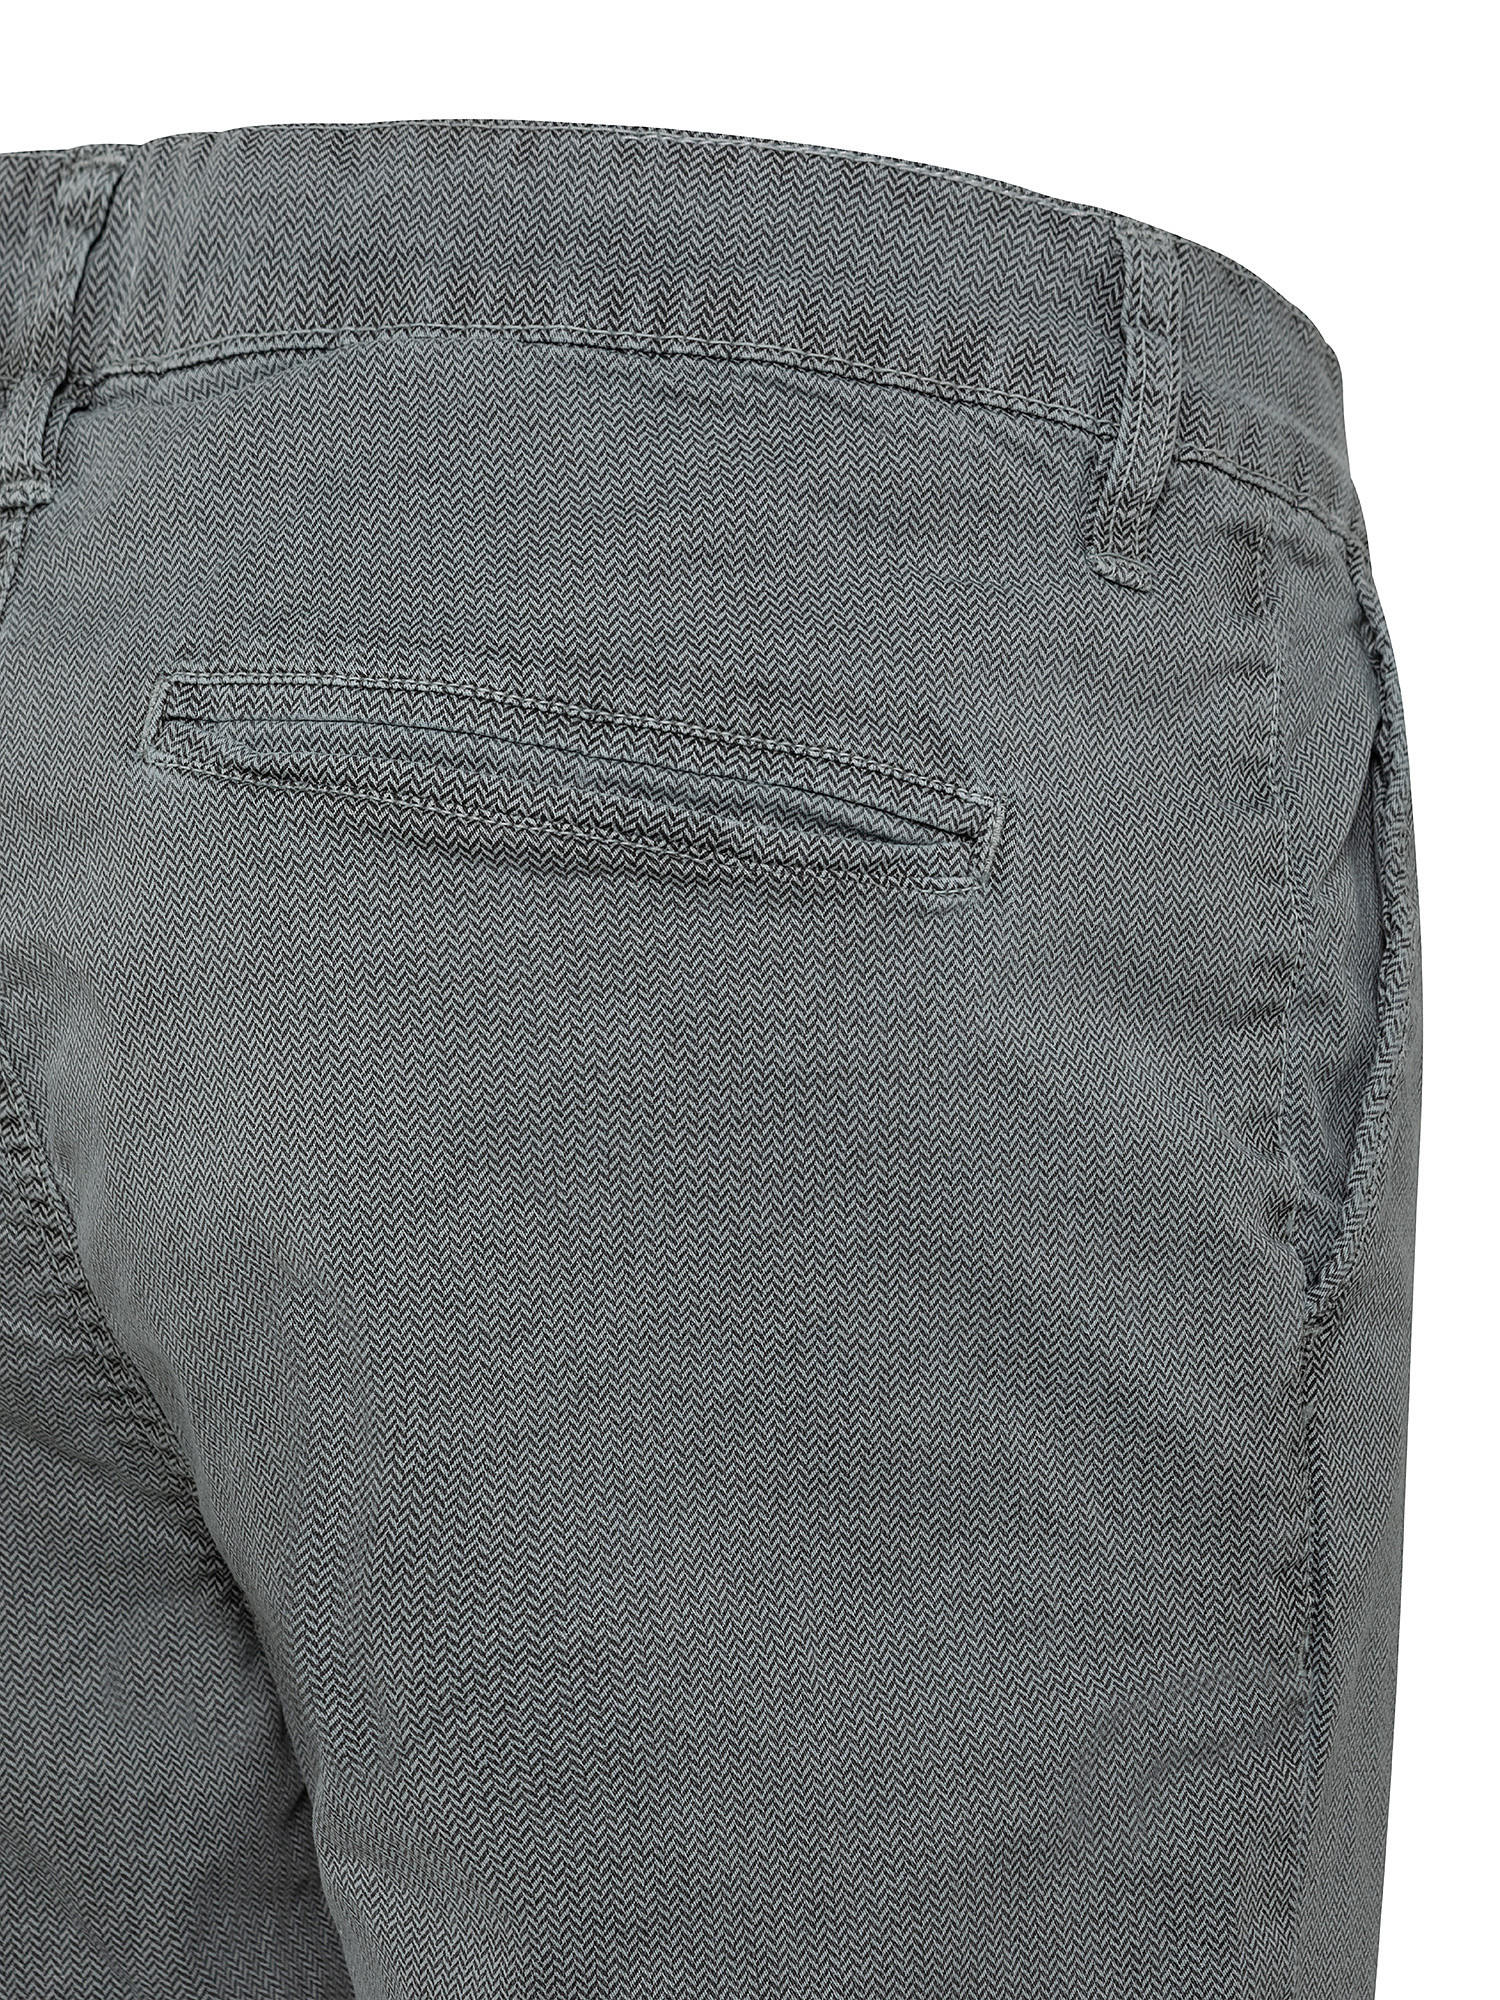 Pantalone chinos cotone stretch, Grigio, large